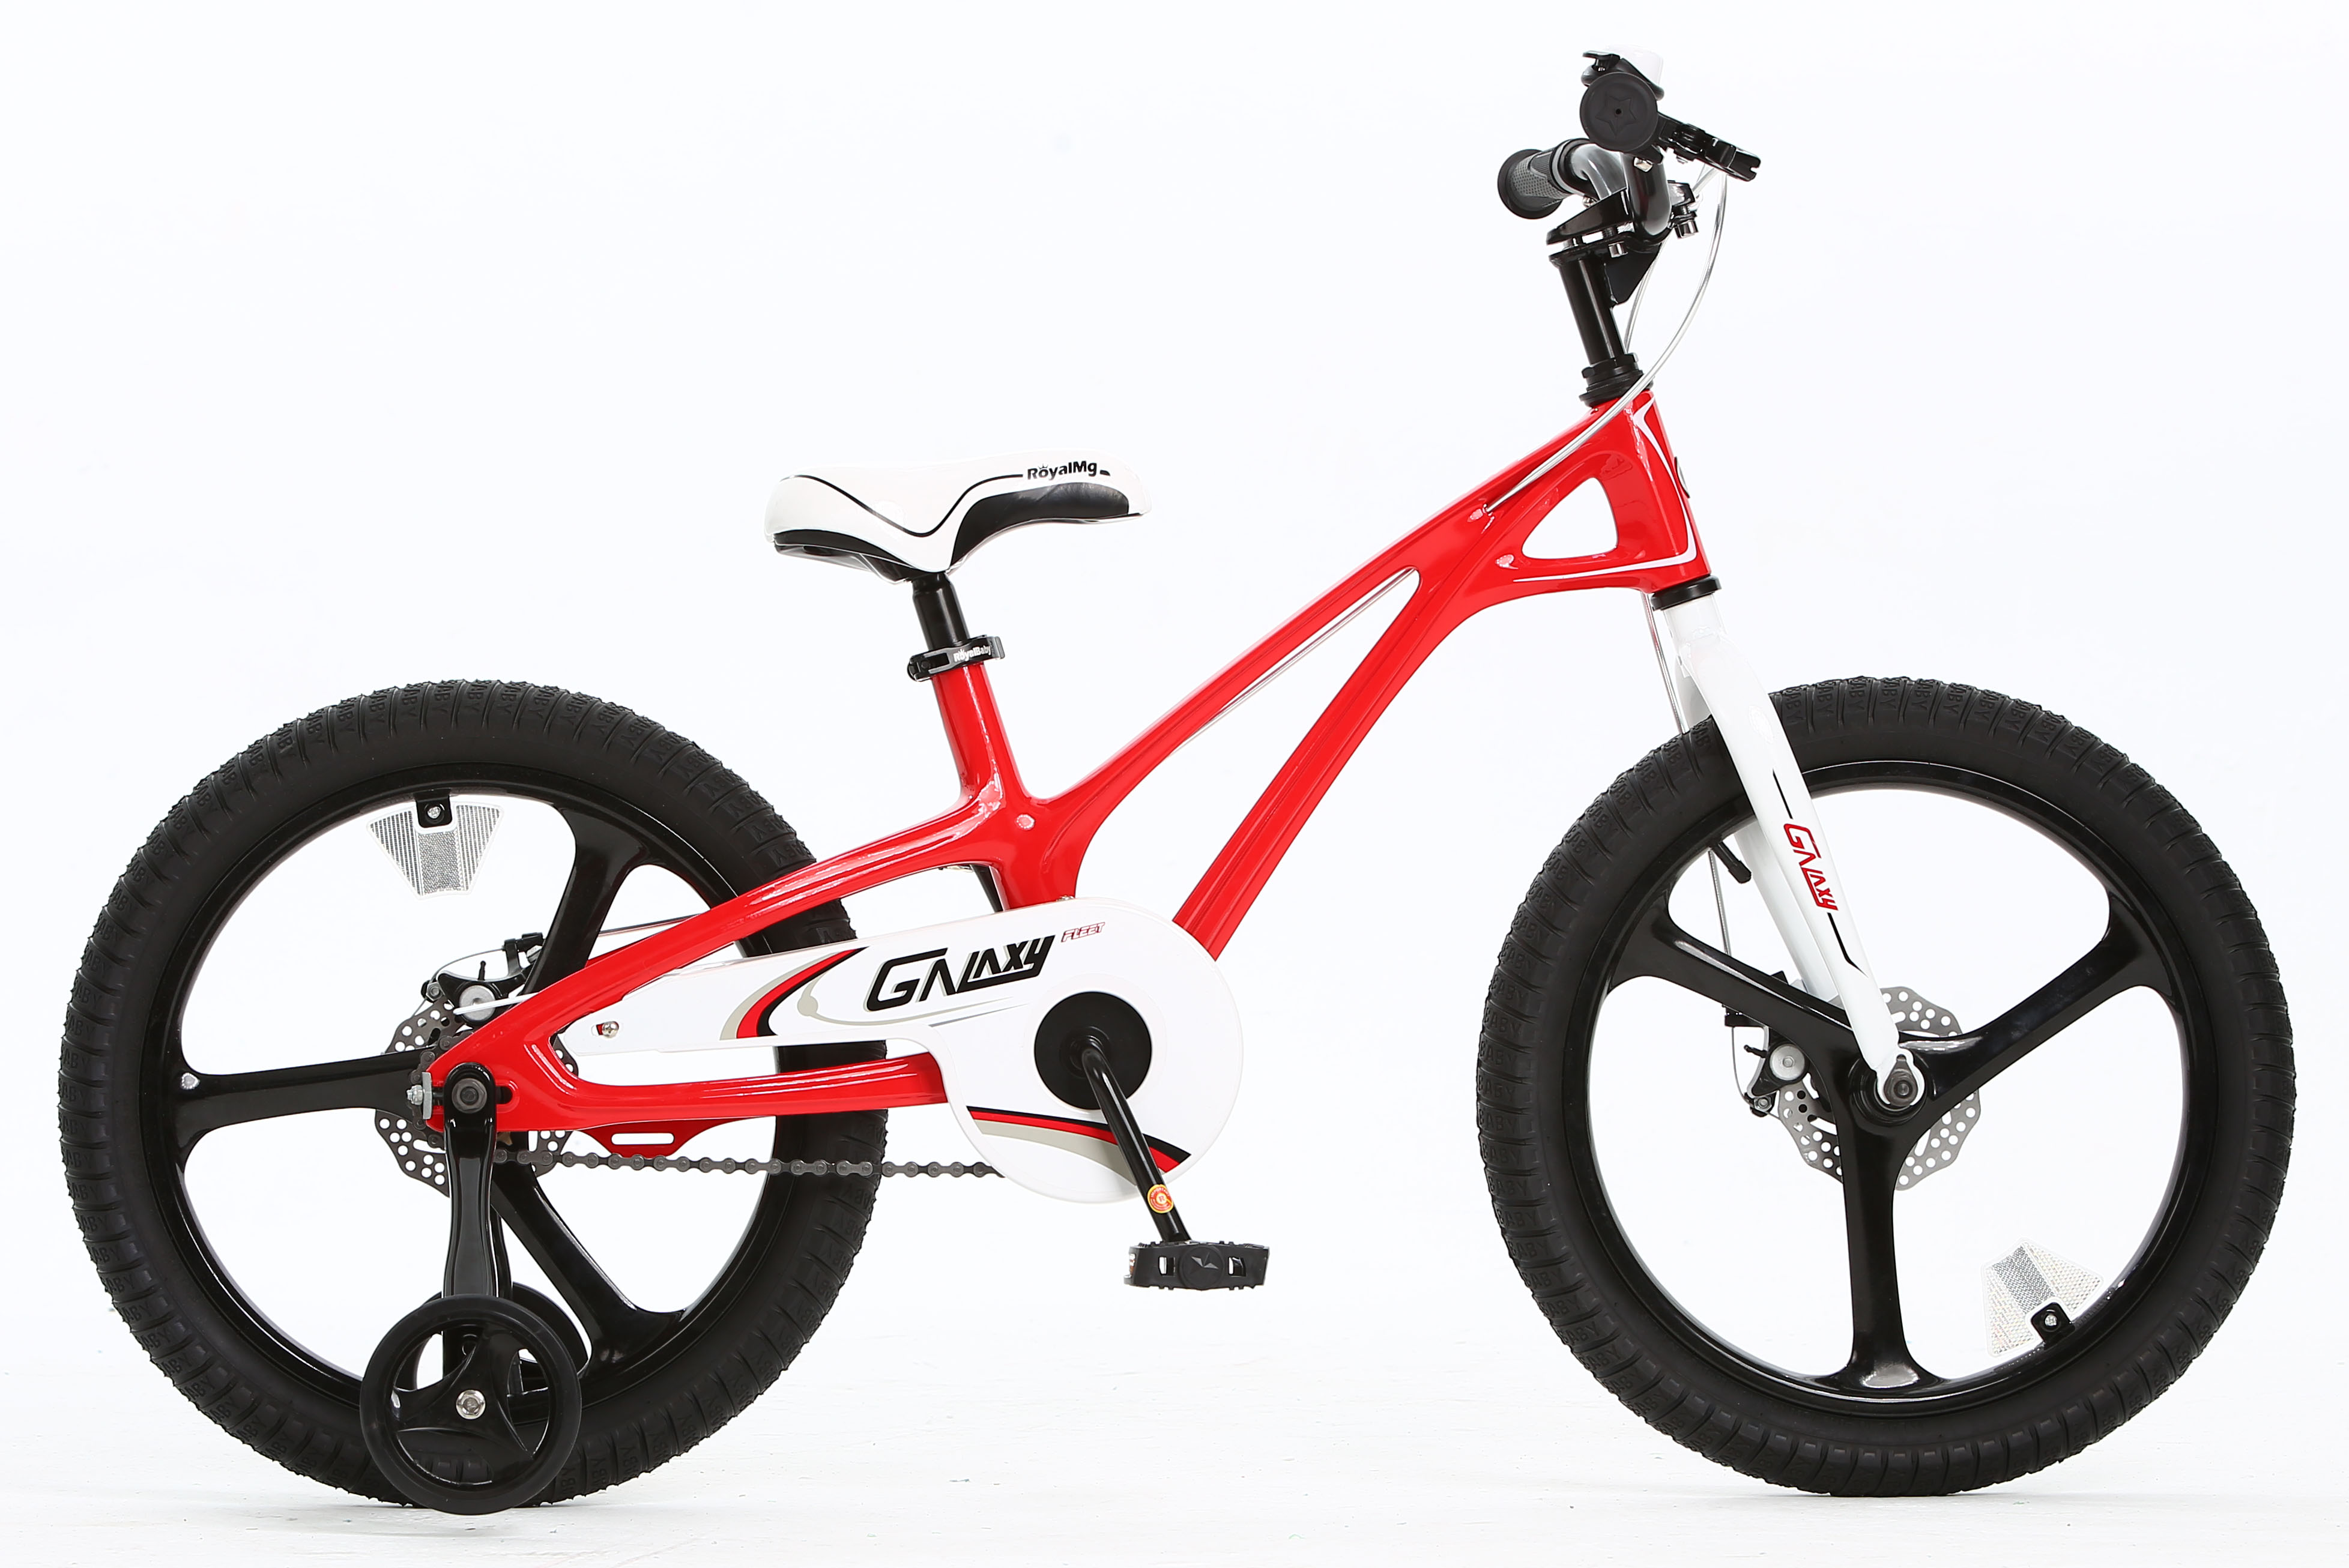  Отзывы о Детском велосипеде Royal Baby Galaxy Fleet 16 2021